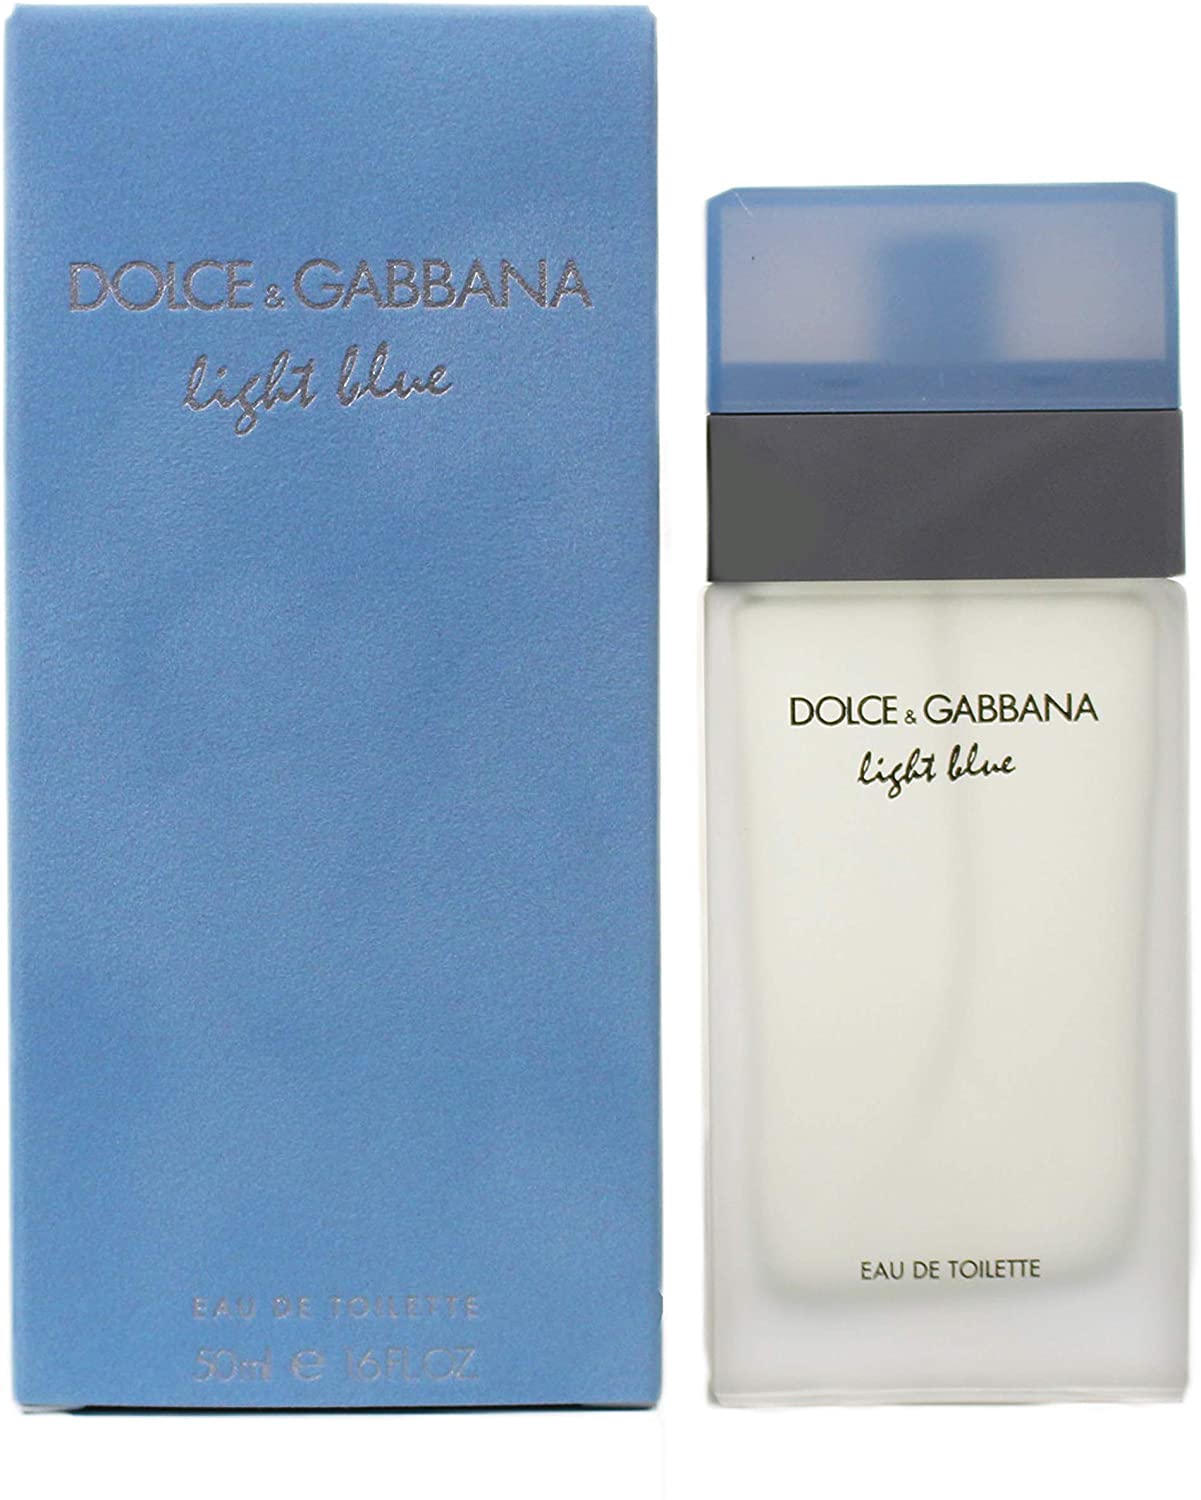 dolce gabbana light blue 50